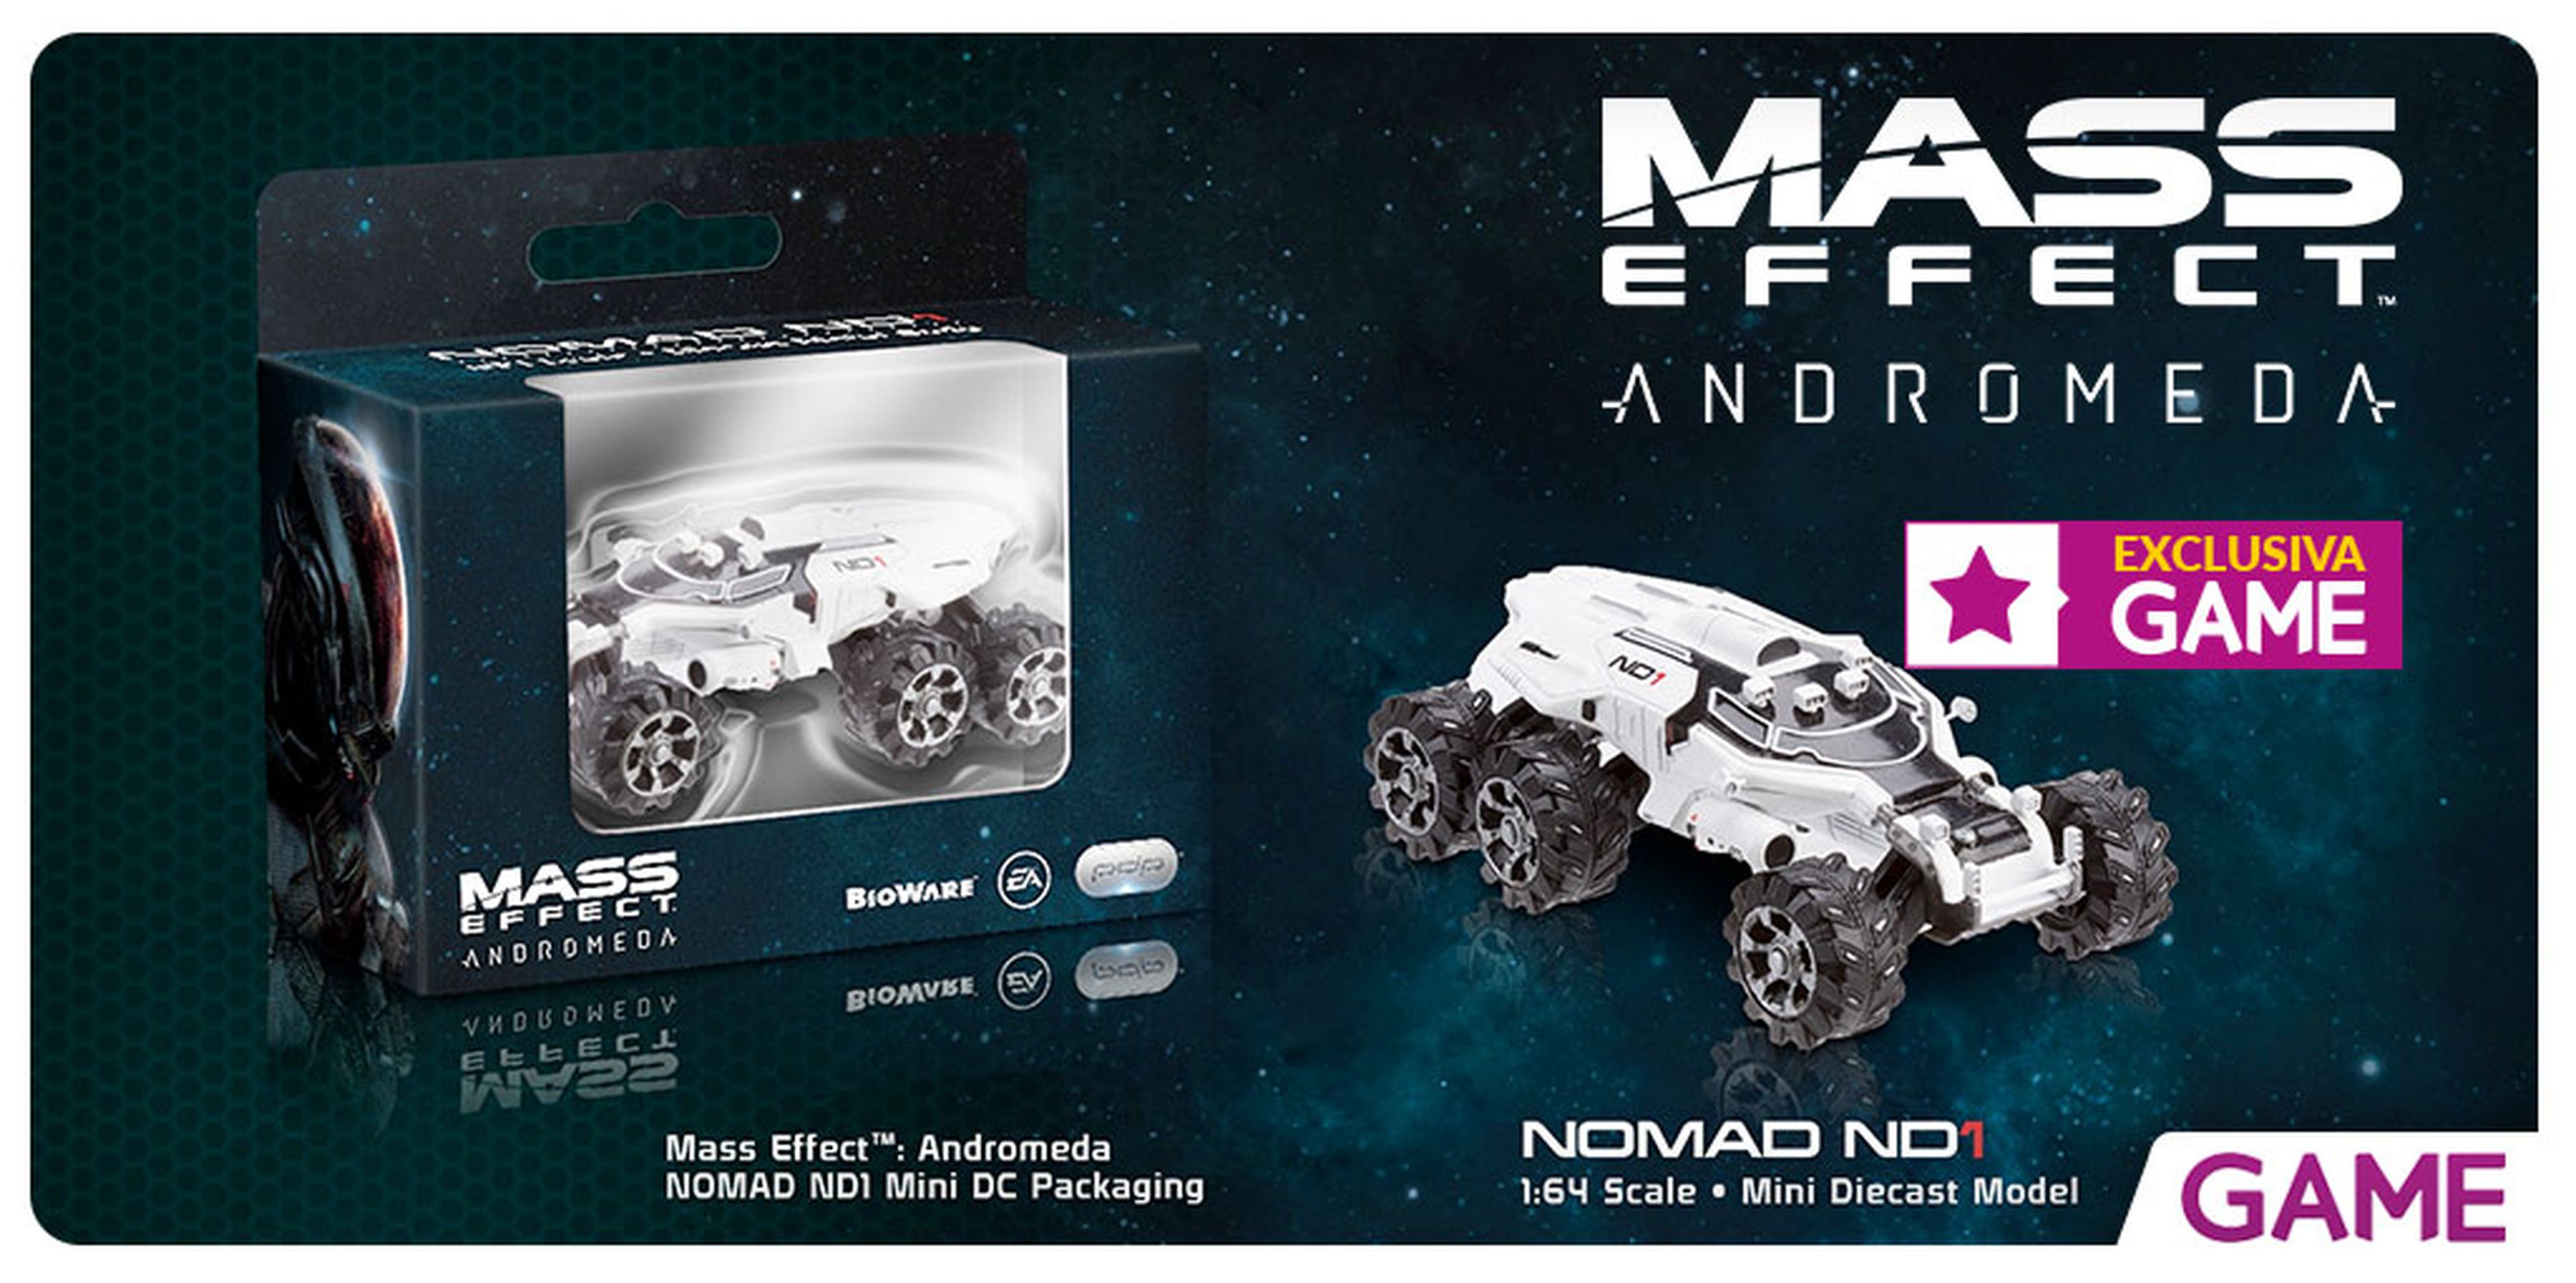 Merchandising exclusivo de Mass Effect Andromeda en GAME